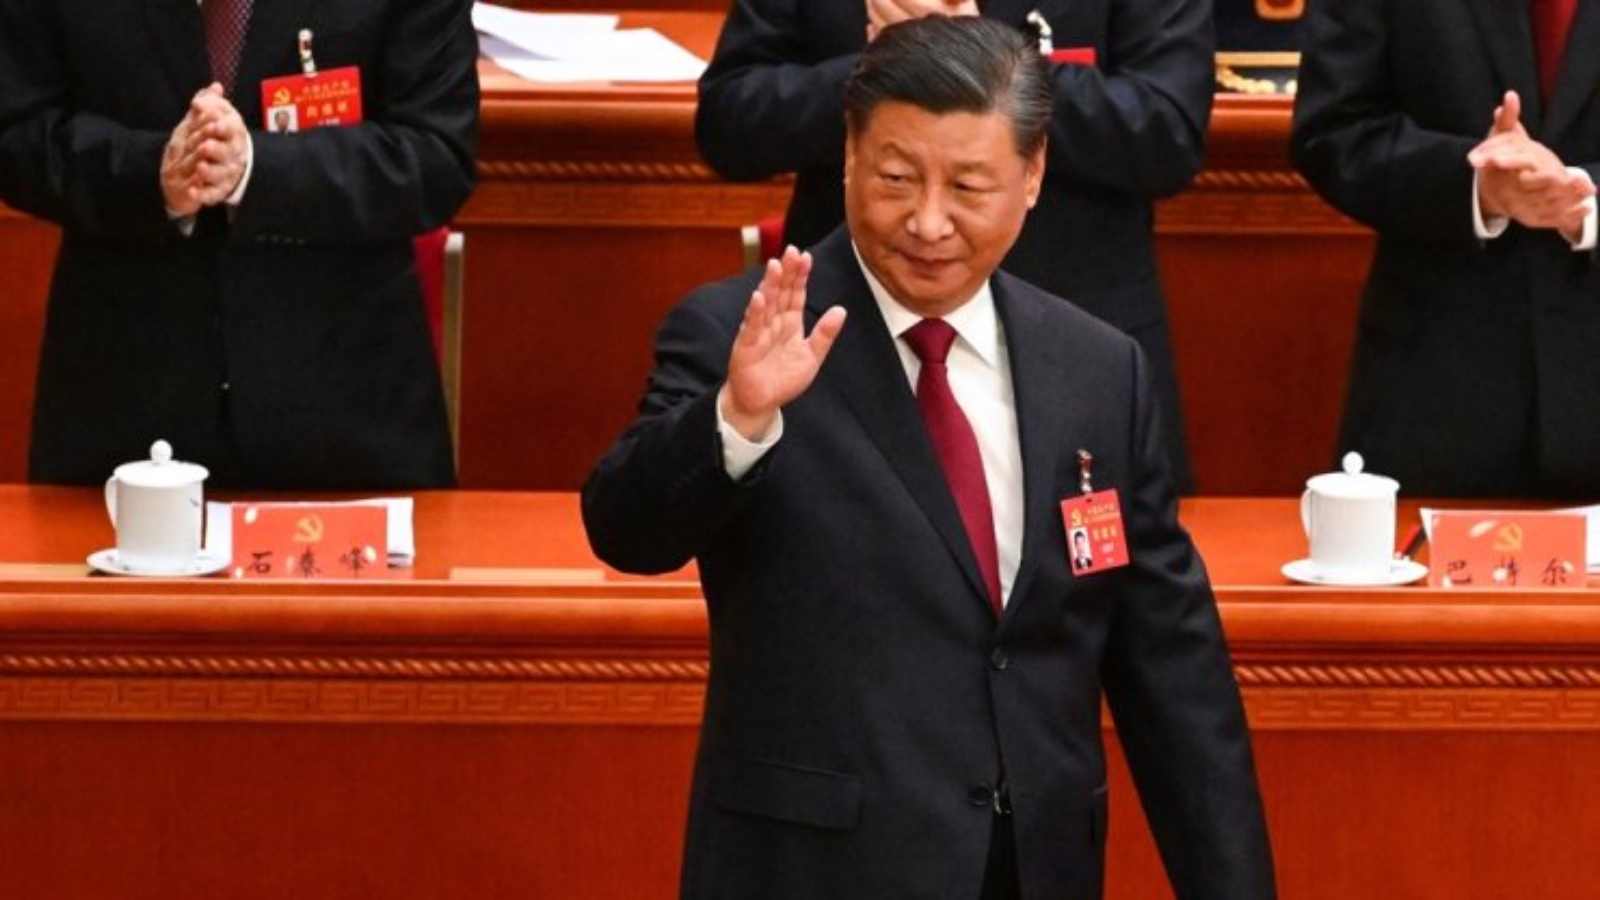 الرئيس الصيني شي جينبينغ أثناء وصوله لحضور الجلسة الافتتاحية للمؤتمر العشرين للحزب الشيوعي الصيني في بكين، الأحد 23 أكتوبر 2022